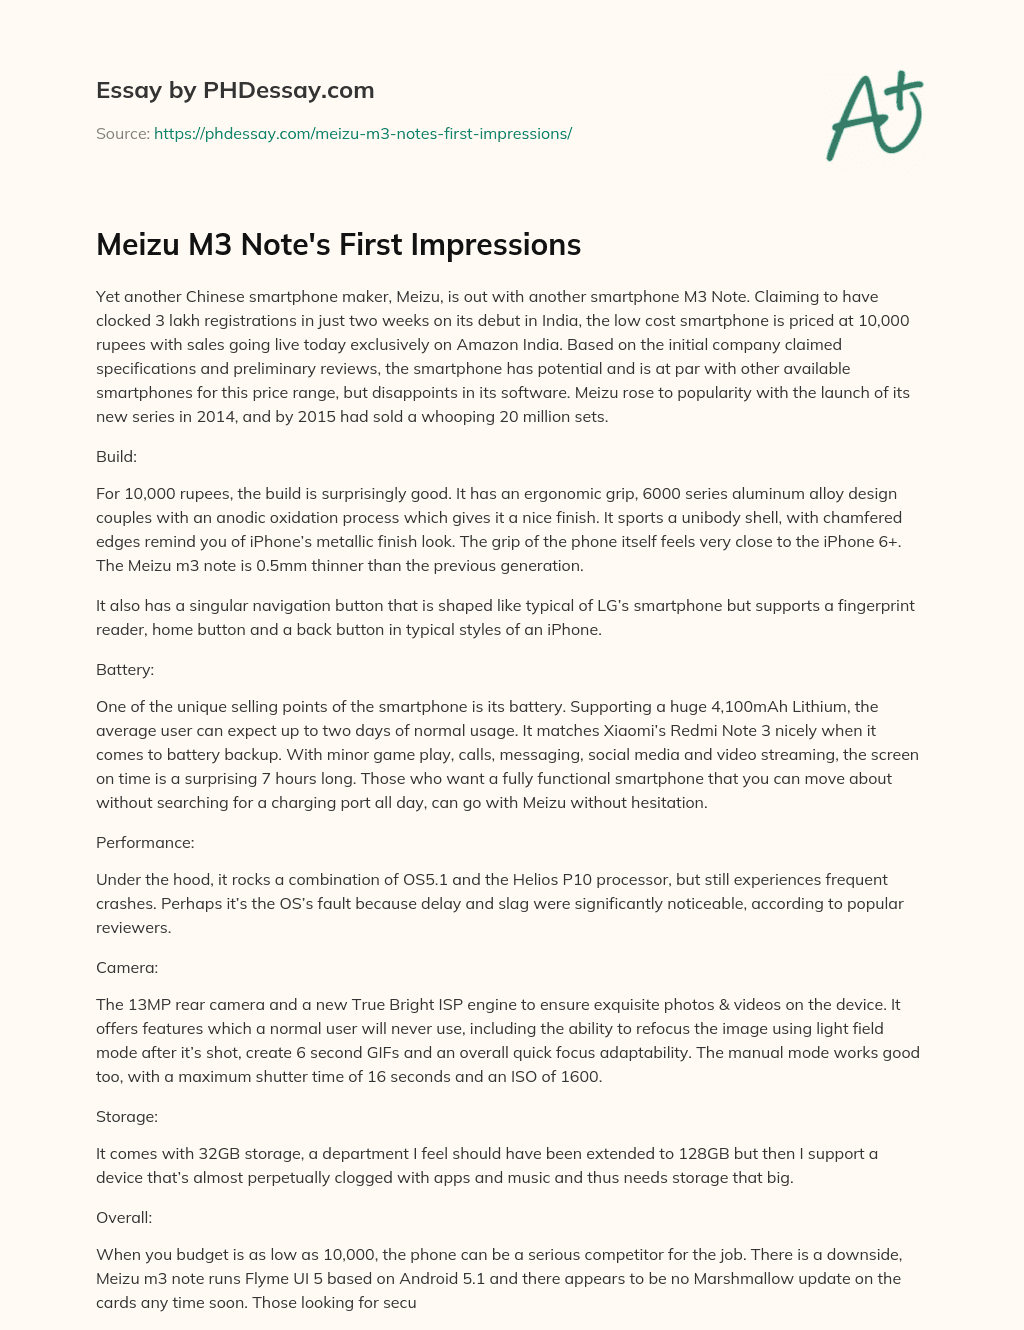 Meizu M3 Note’s First Impressions essay